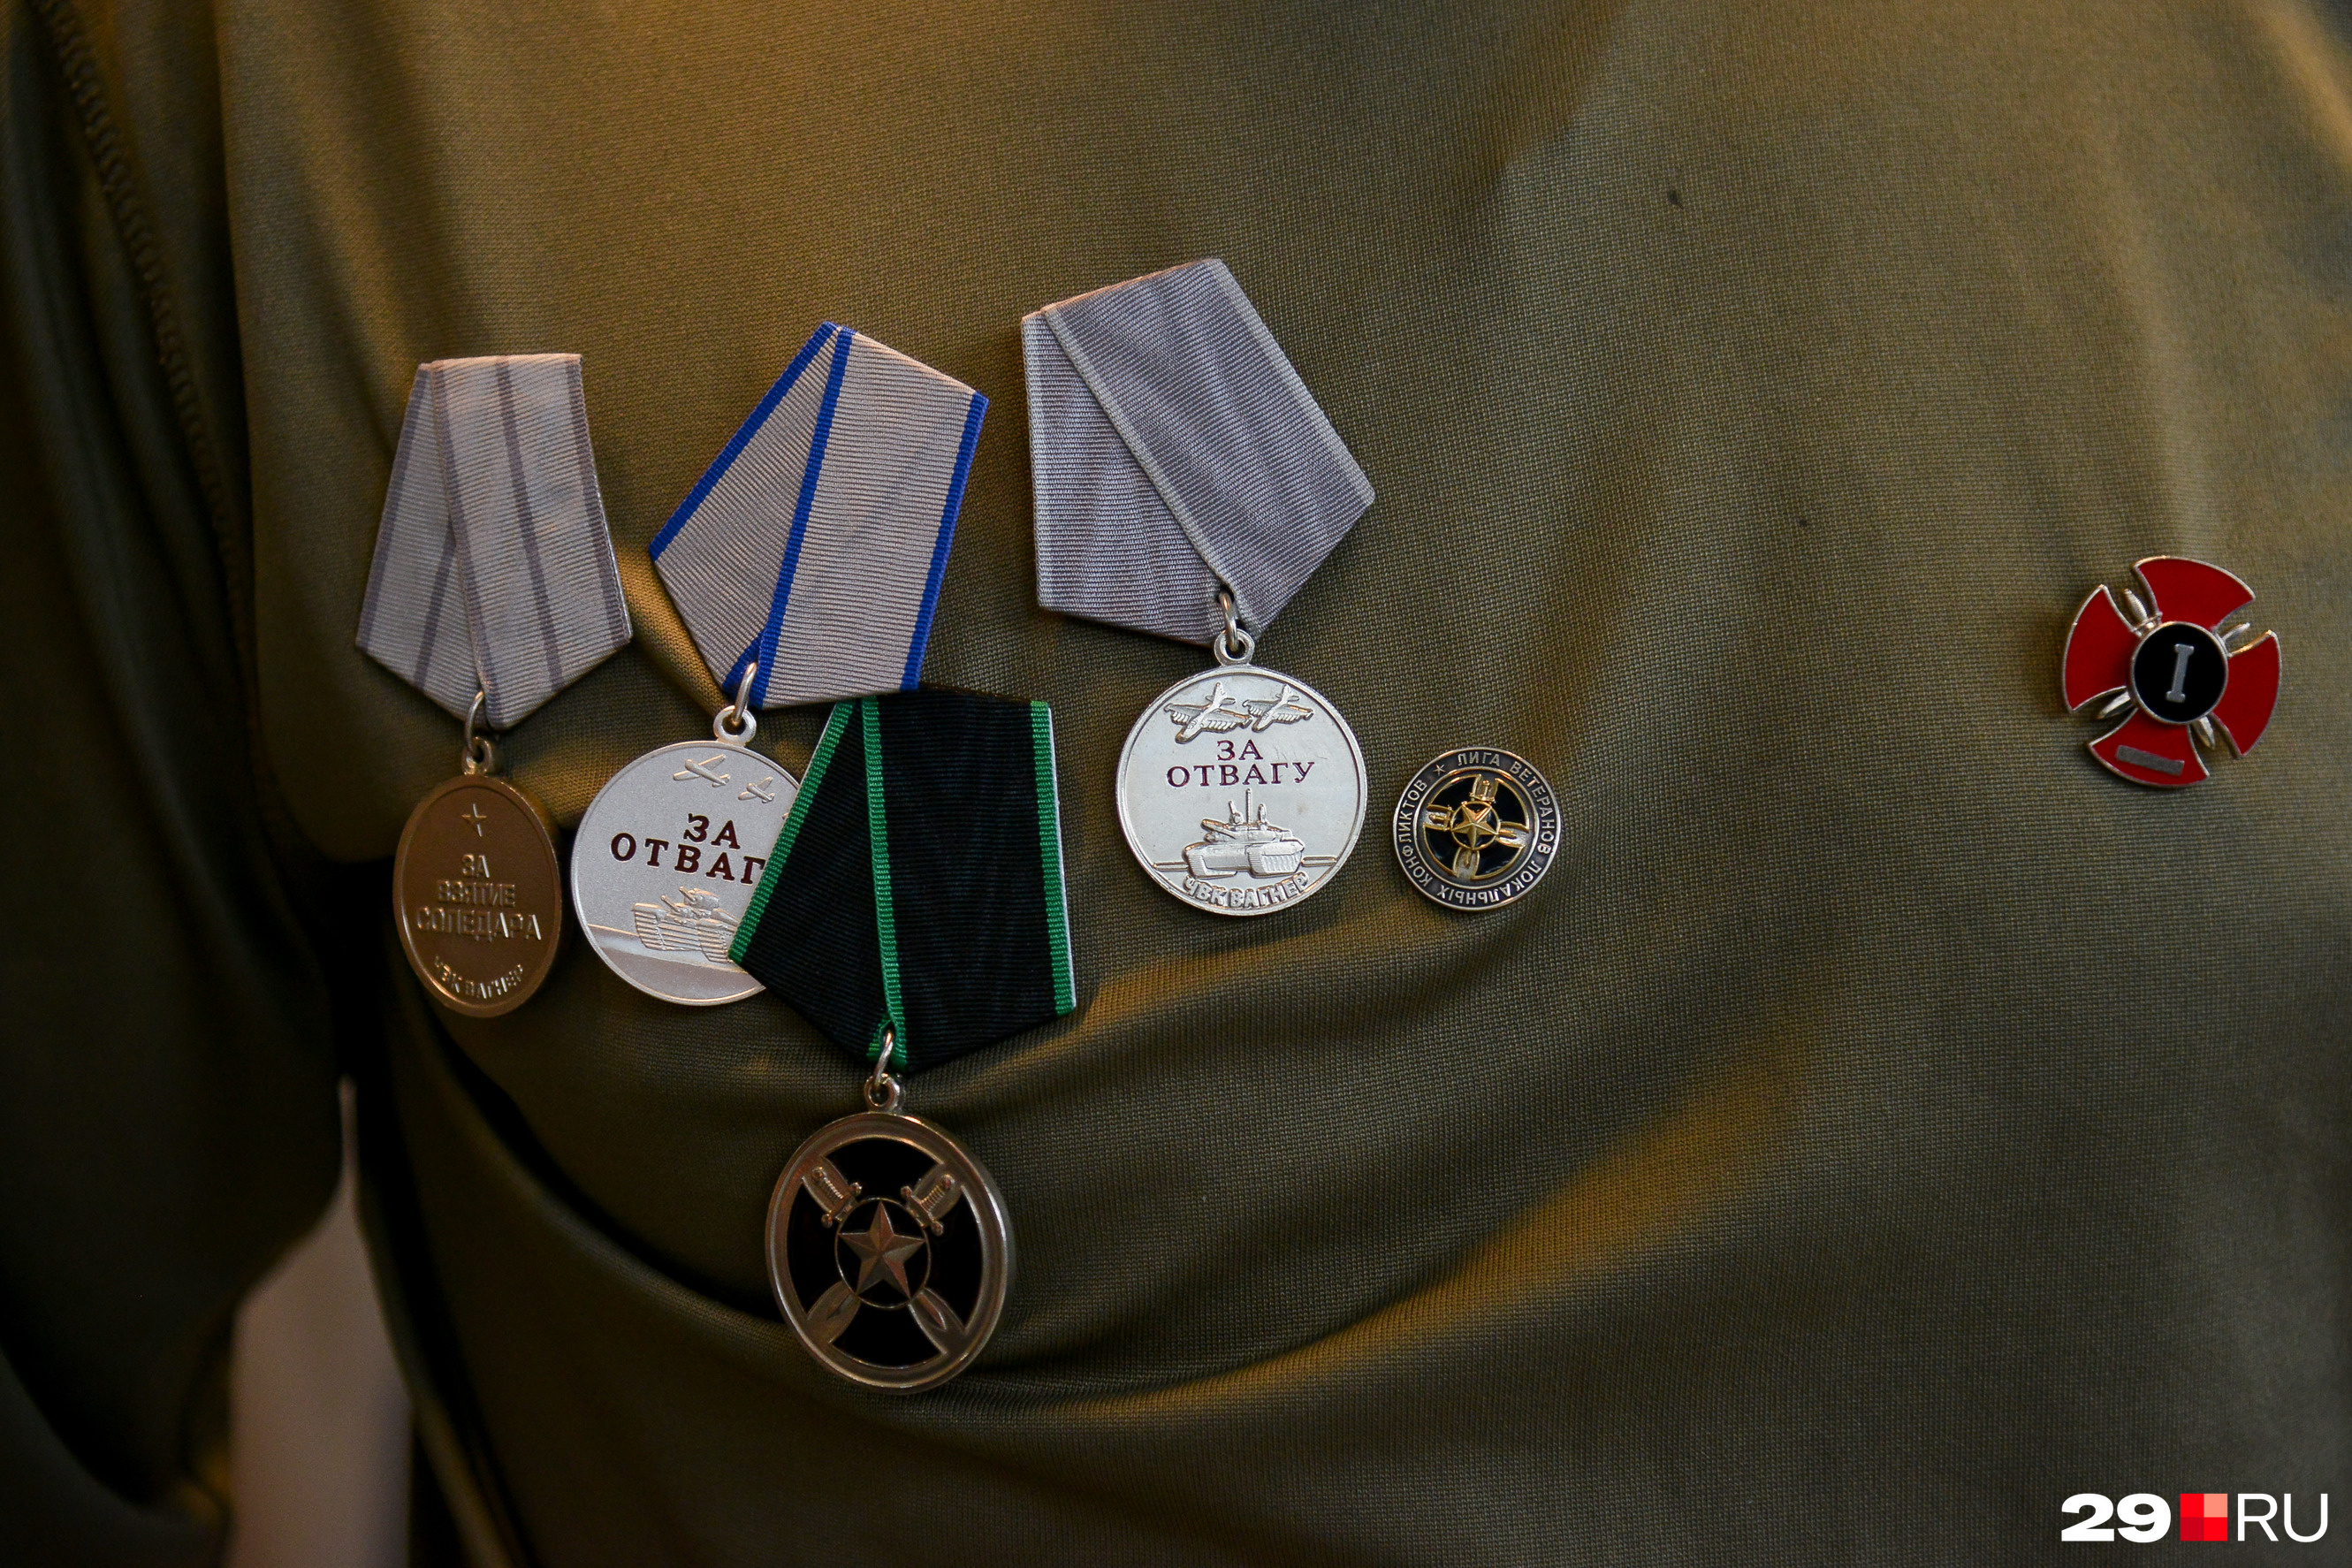 Как получить медаль ветерана боевых действий?